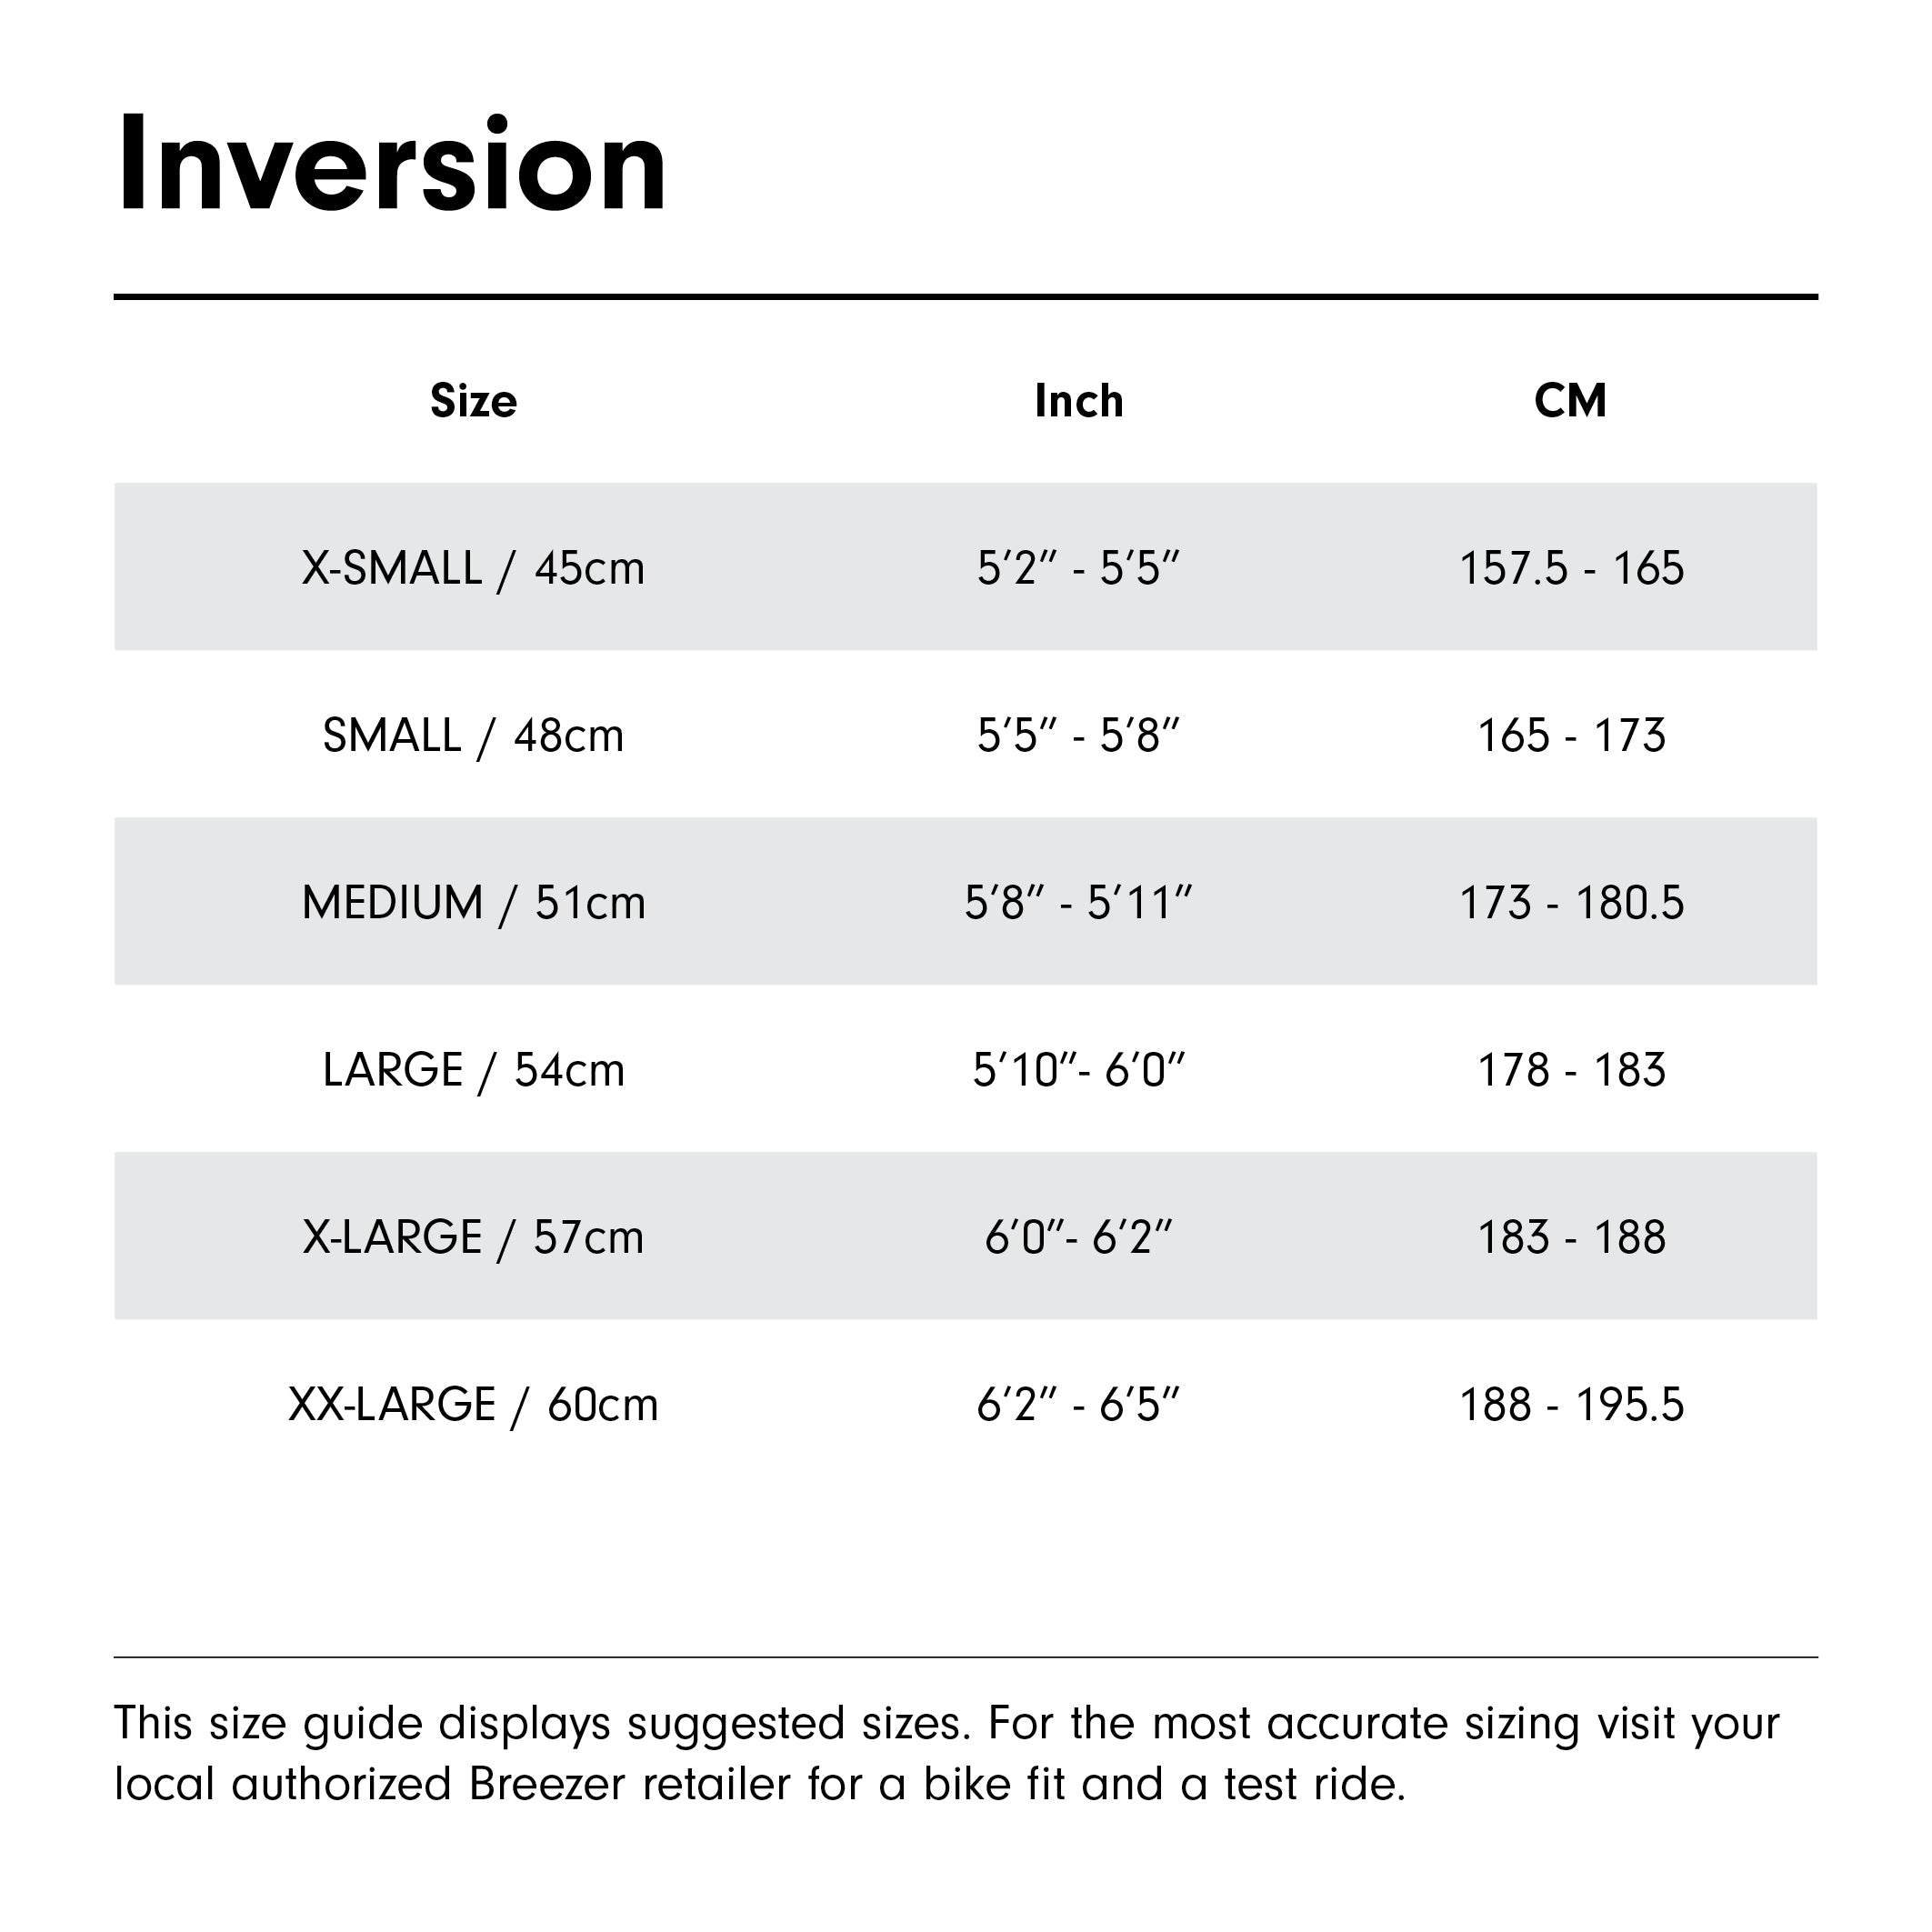 Inversion Size Guide